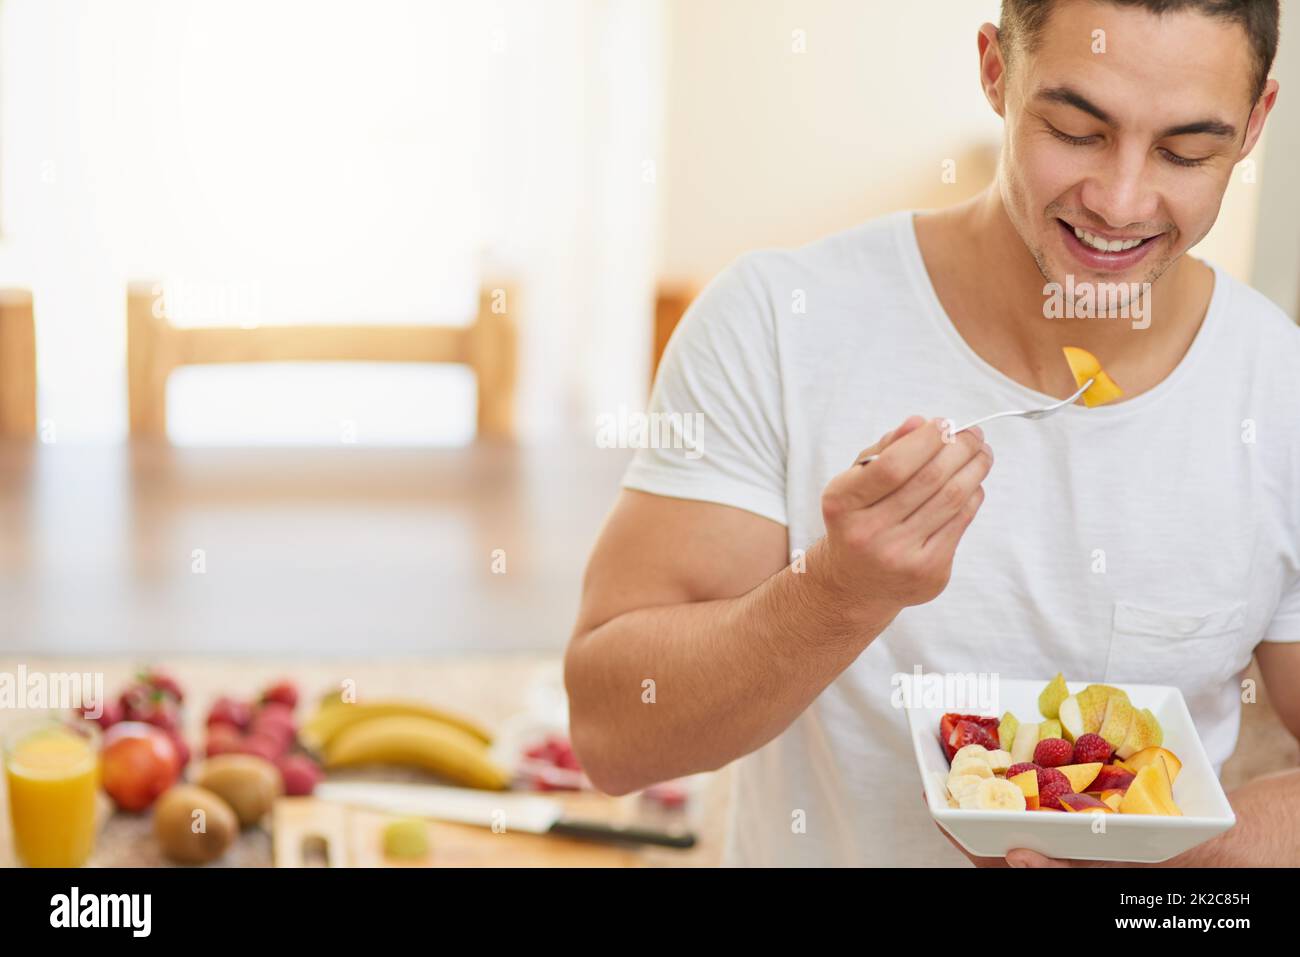 Nichts ist besser als zu einem gesunden Frühstück aufzuwachen. Kurzer Schuss eines jungen Mannes, der einen Obstsalat isst. Stockfoto